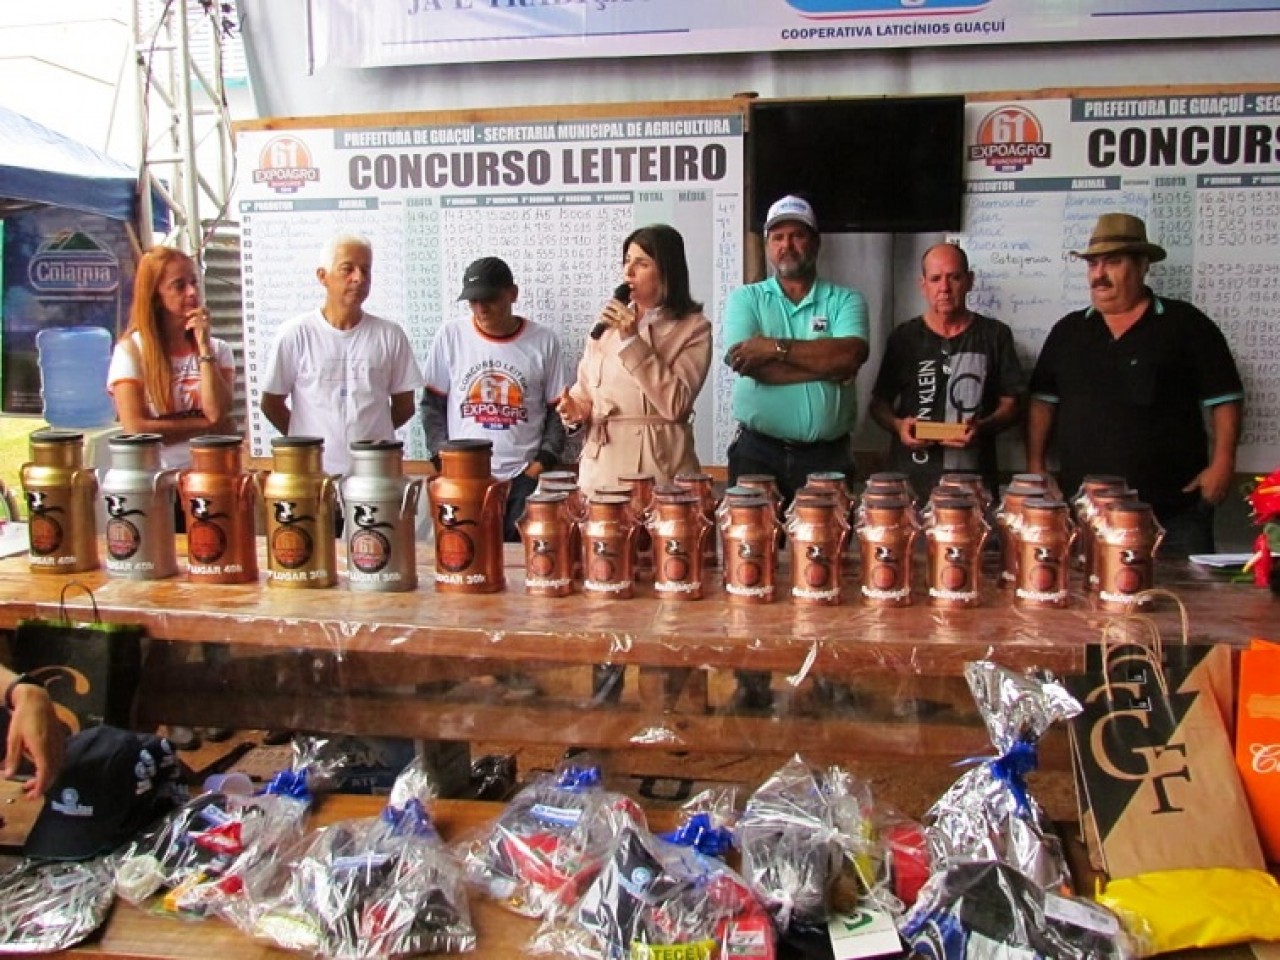 Concurso Leiteiro da Expoagro mostra potencial da pecuária de Guaçuí